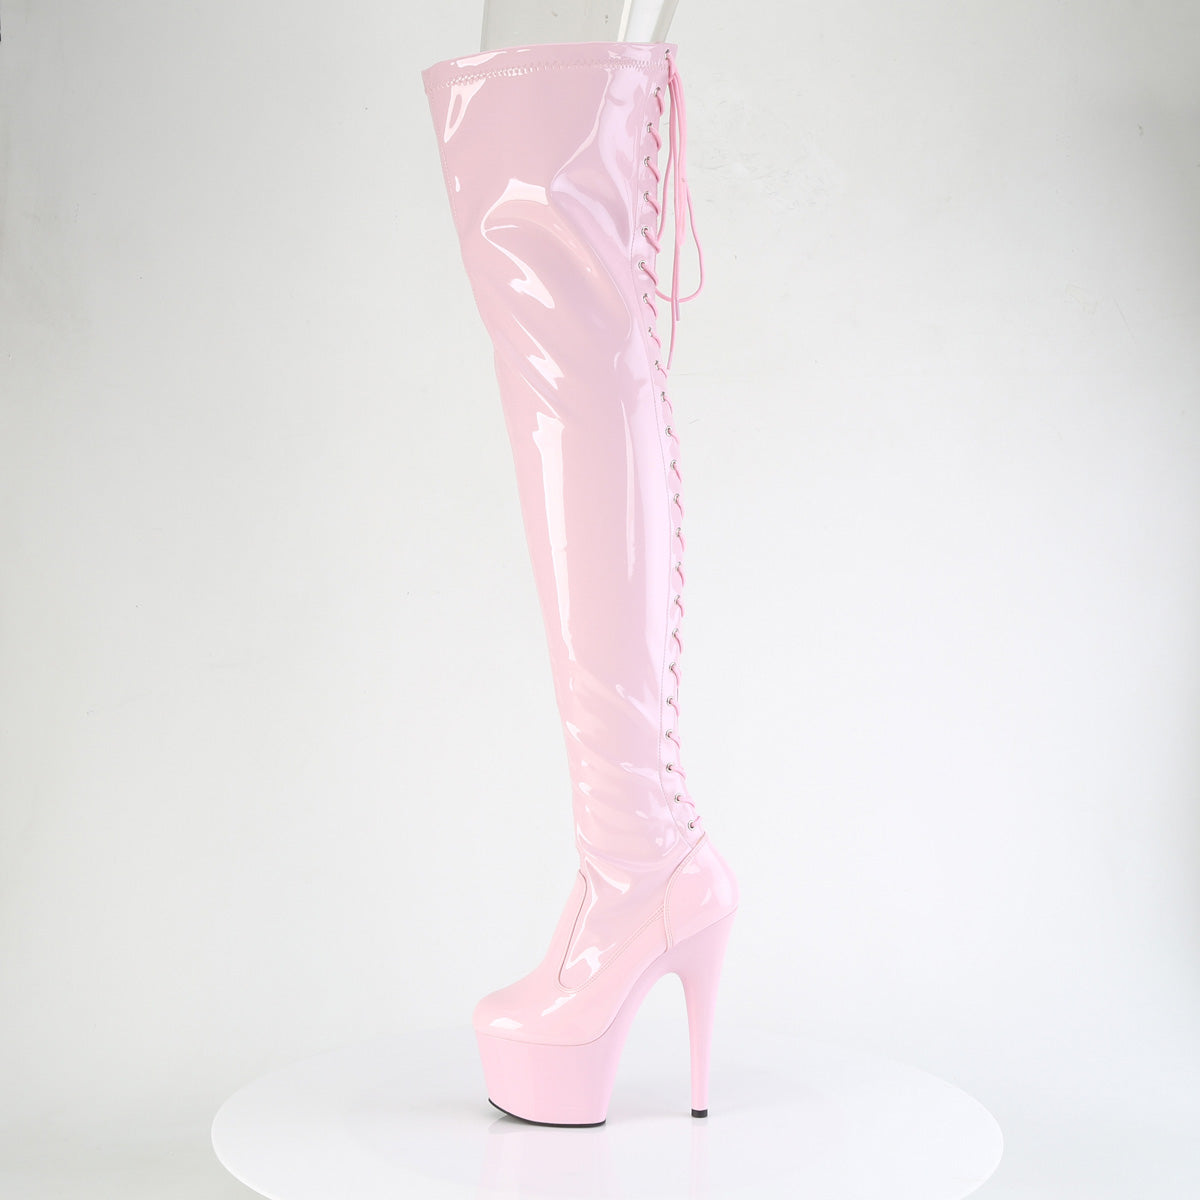 7 Inch Heel ADORE-3850 Baby Pink